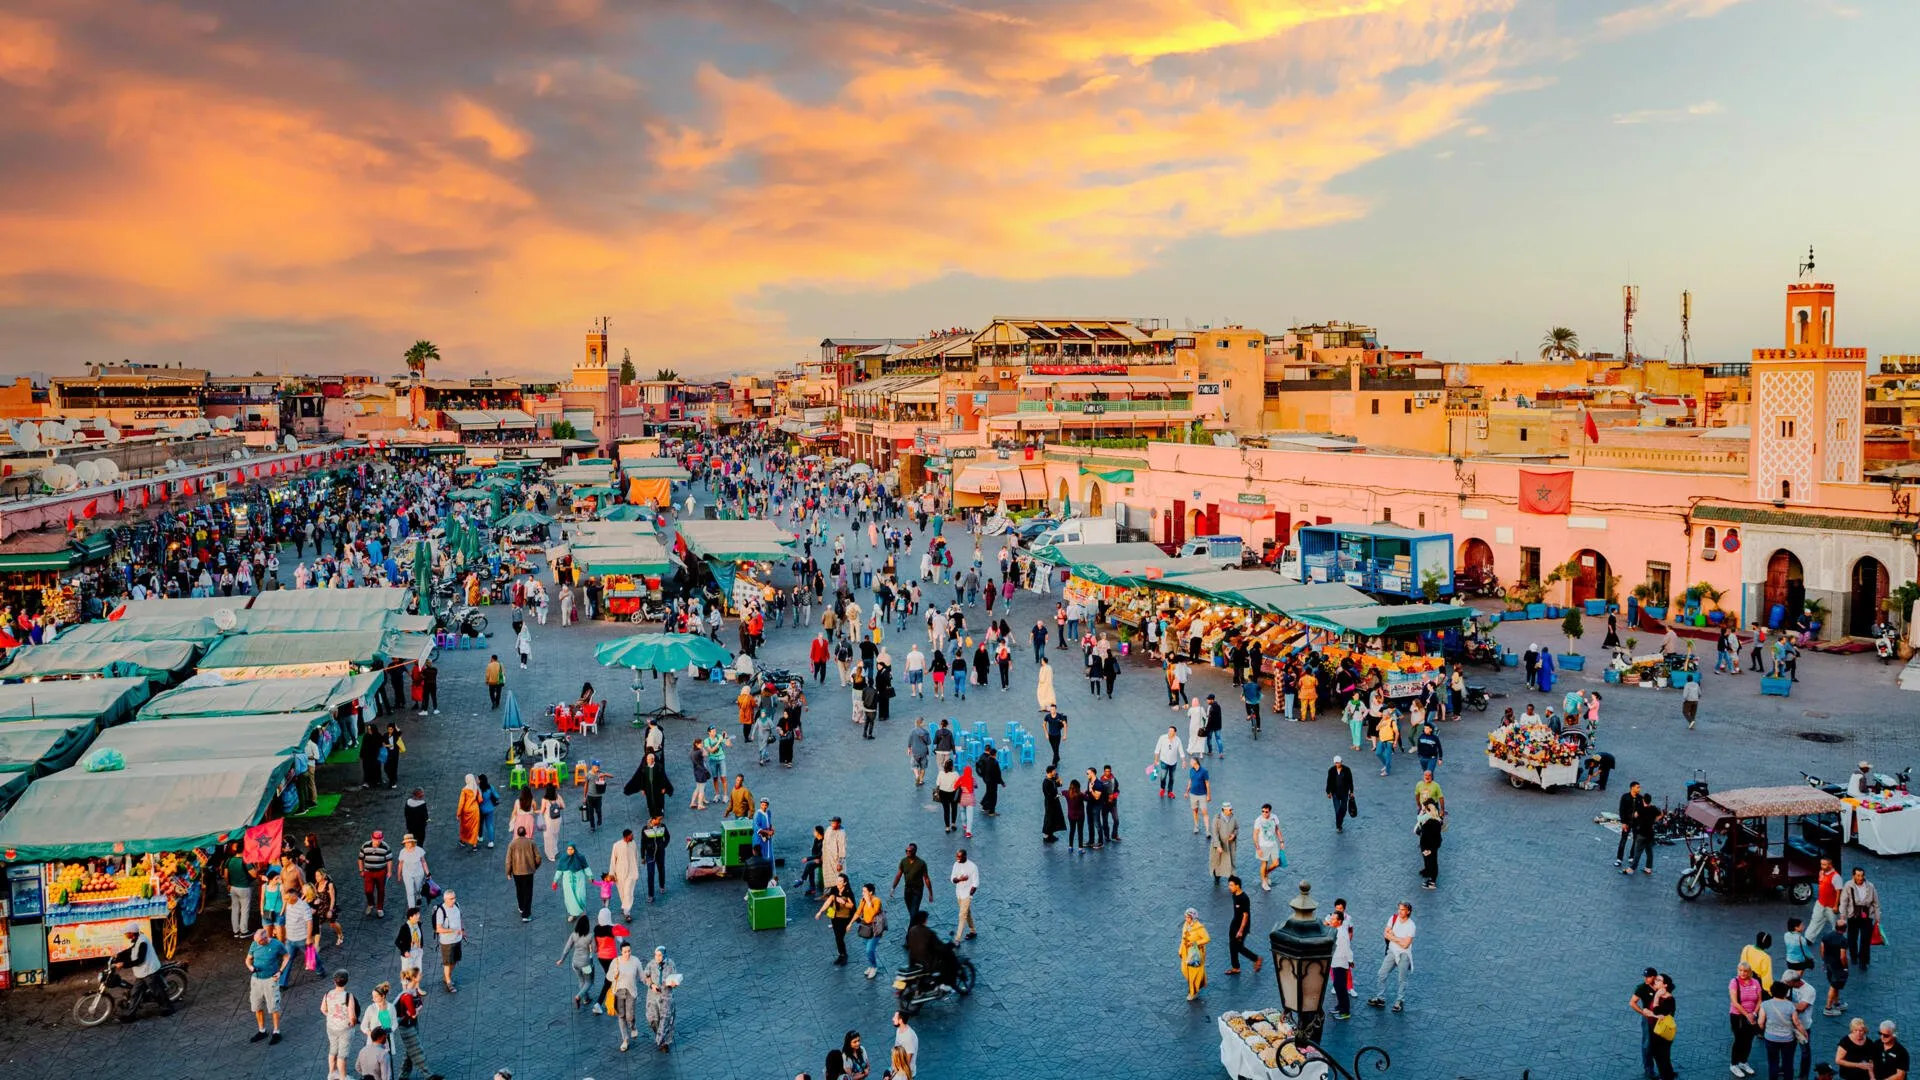 Qualité de vie : le Maroc en tête de liste des pays africains